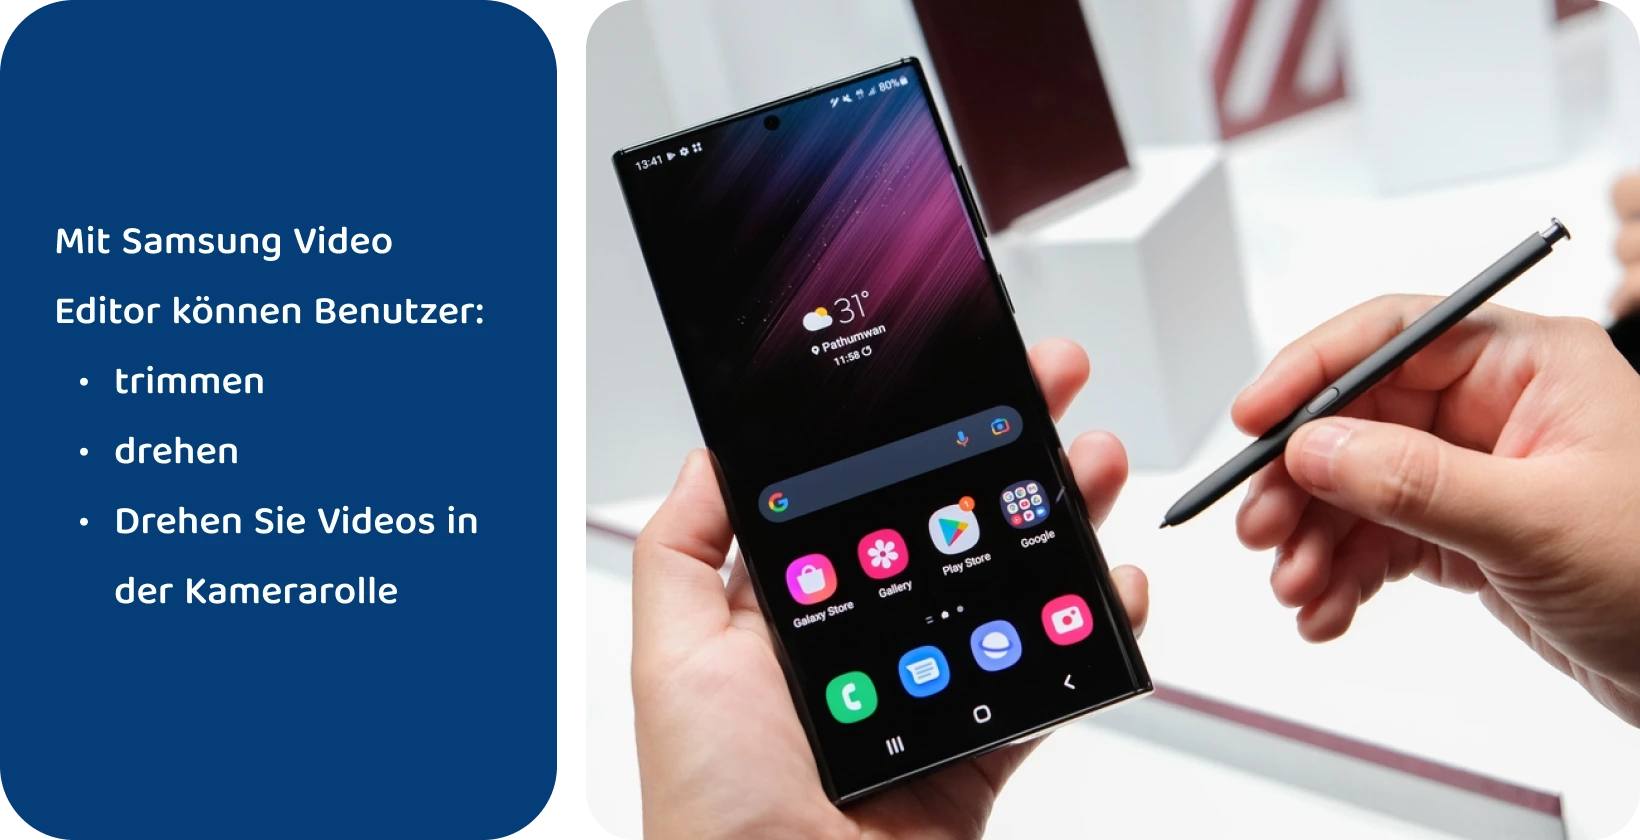 Halten Sie das Samsung Note-Gerät mit dem S Pen in der Hand, um ein Video auf dem Bildschirm zu bearbeiten und Text hinzuzufügen.